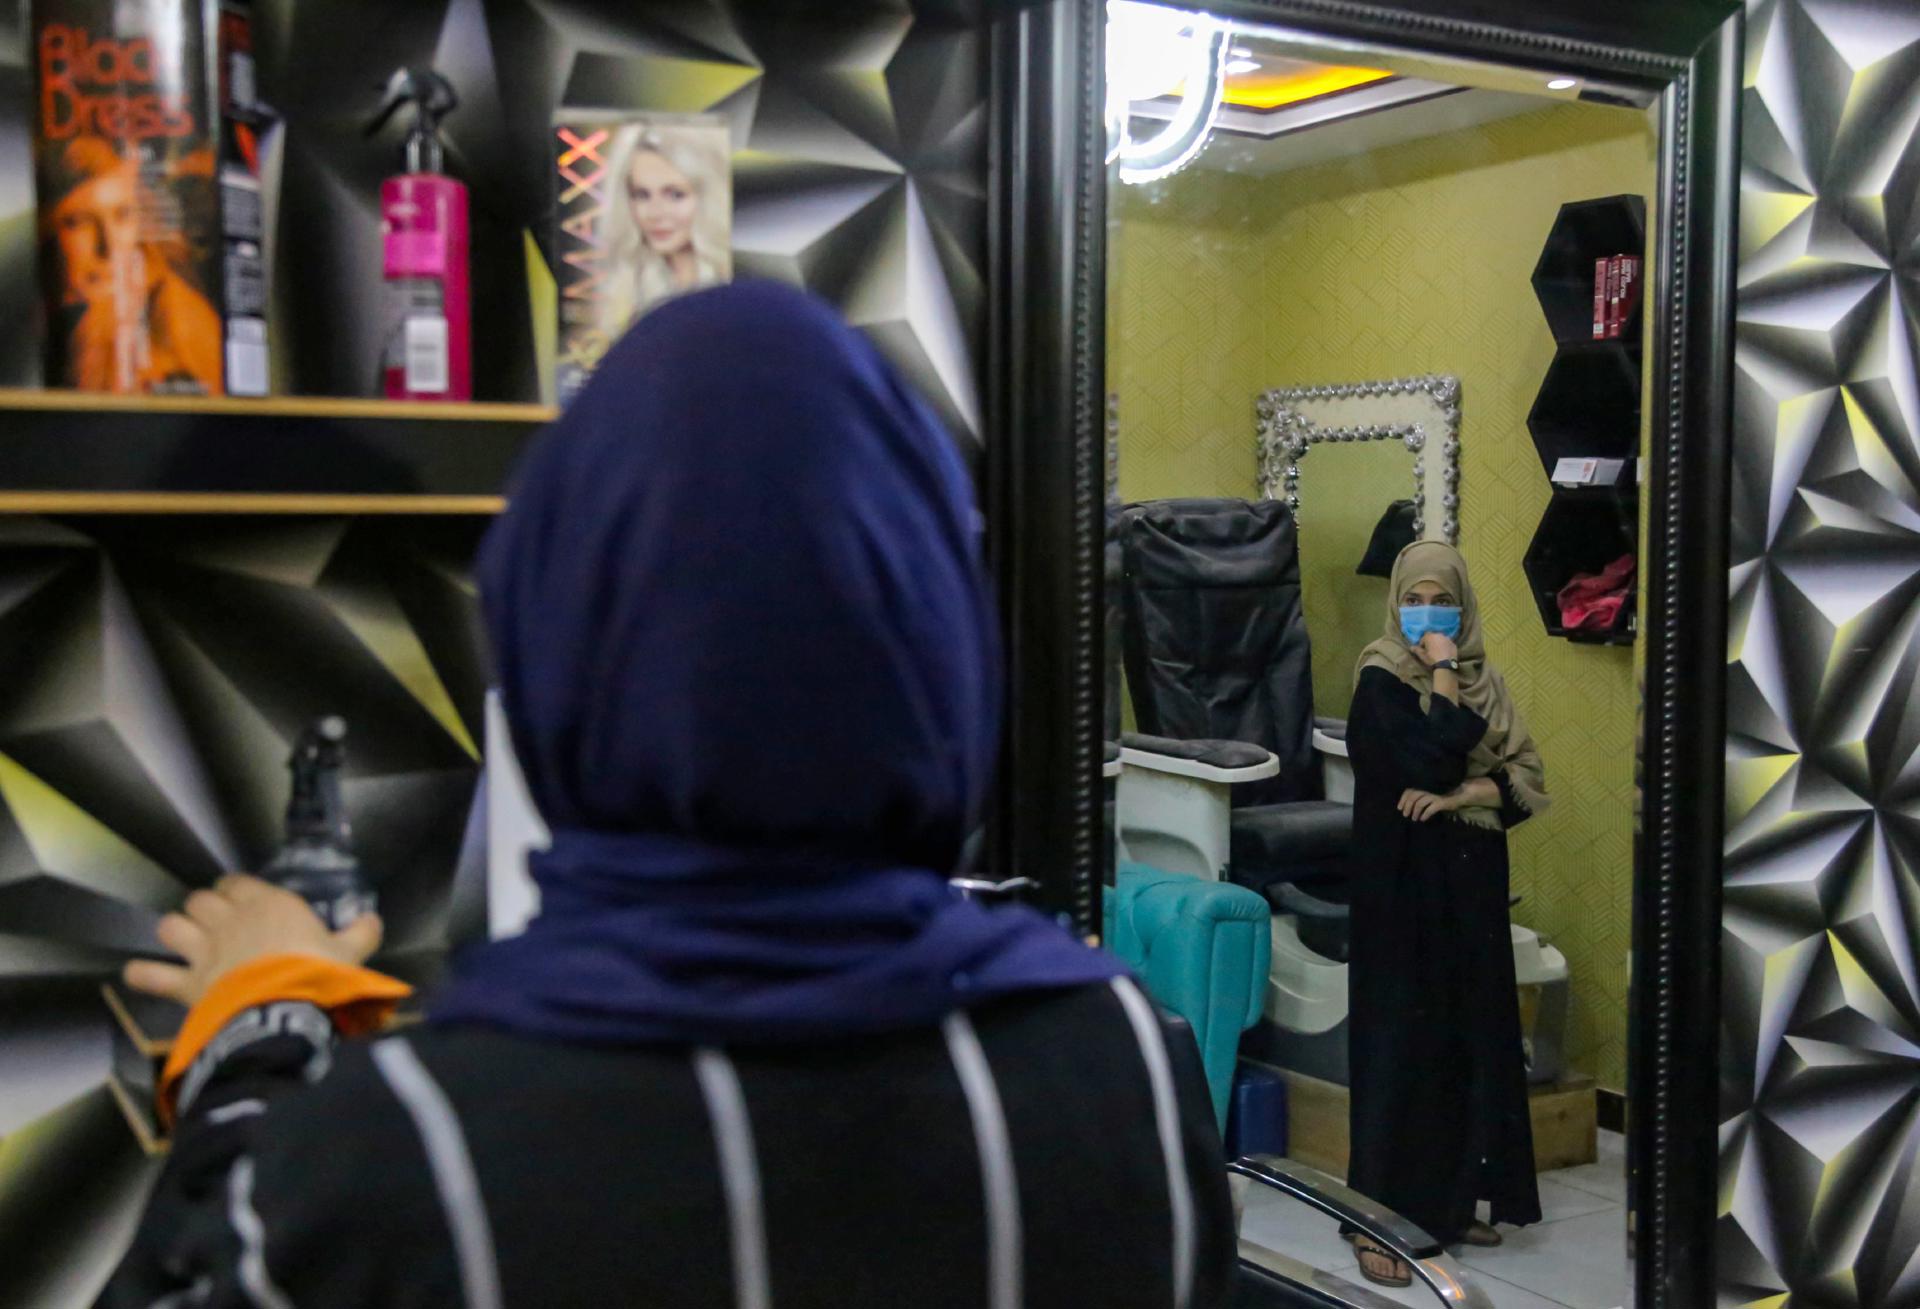 Afganistán: ¿Cómo afecta el cierre de peluquerías la compleja economía de este país?